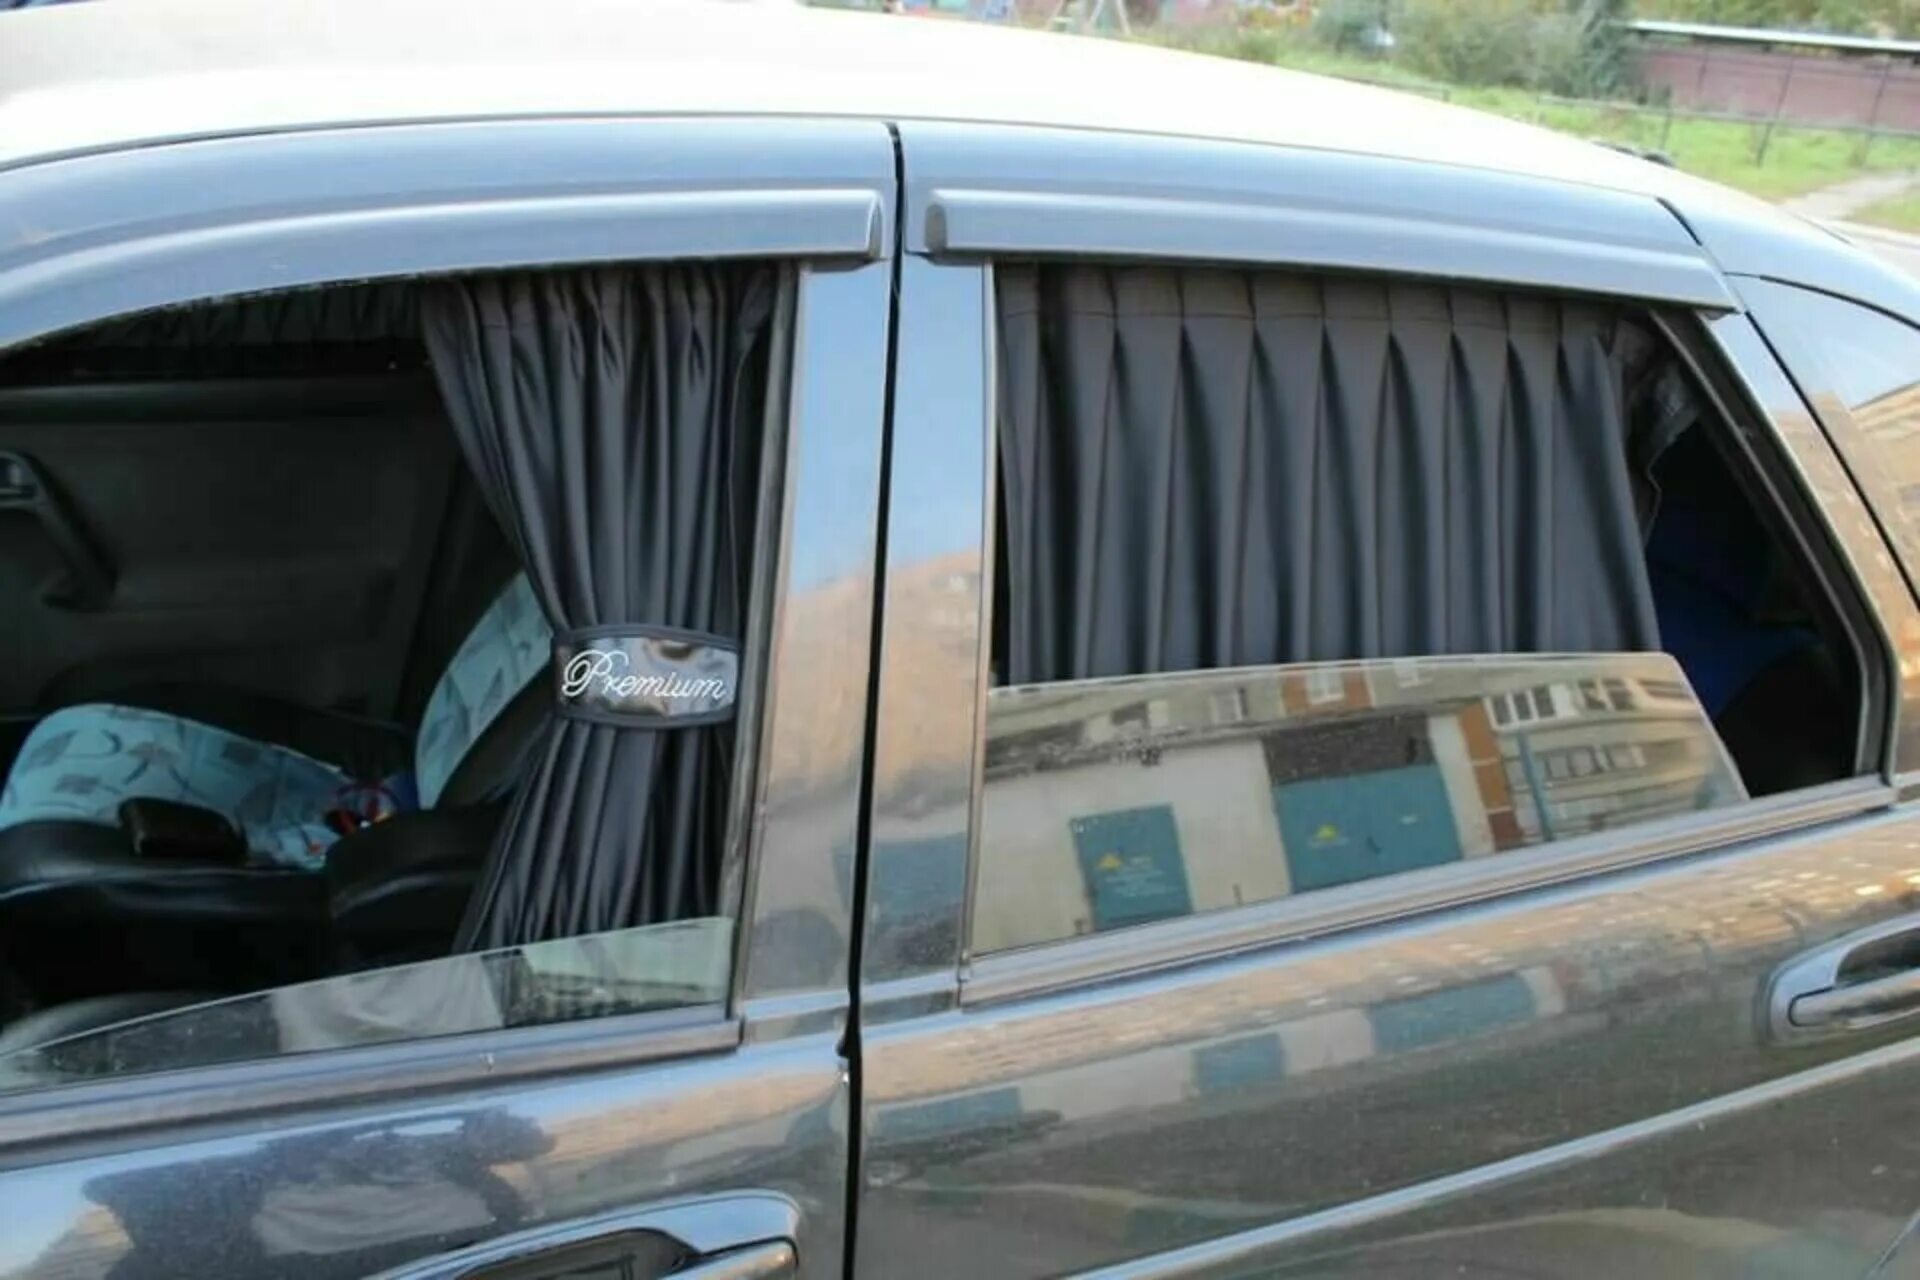 Автошторки Premium. Шторки на окна ВАЗ 2104 каркасные. Шторки на боковые стекла Ровер 75. Занавески для автомобиля.